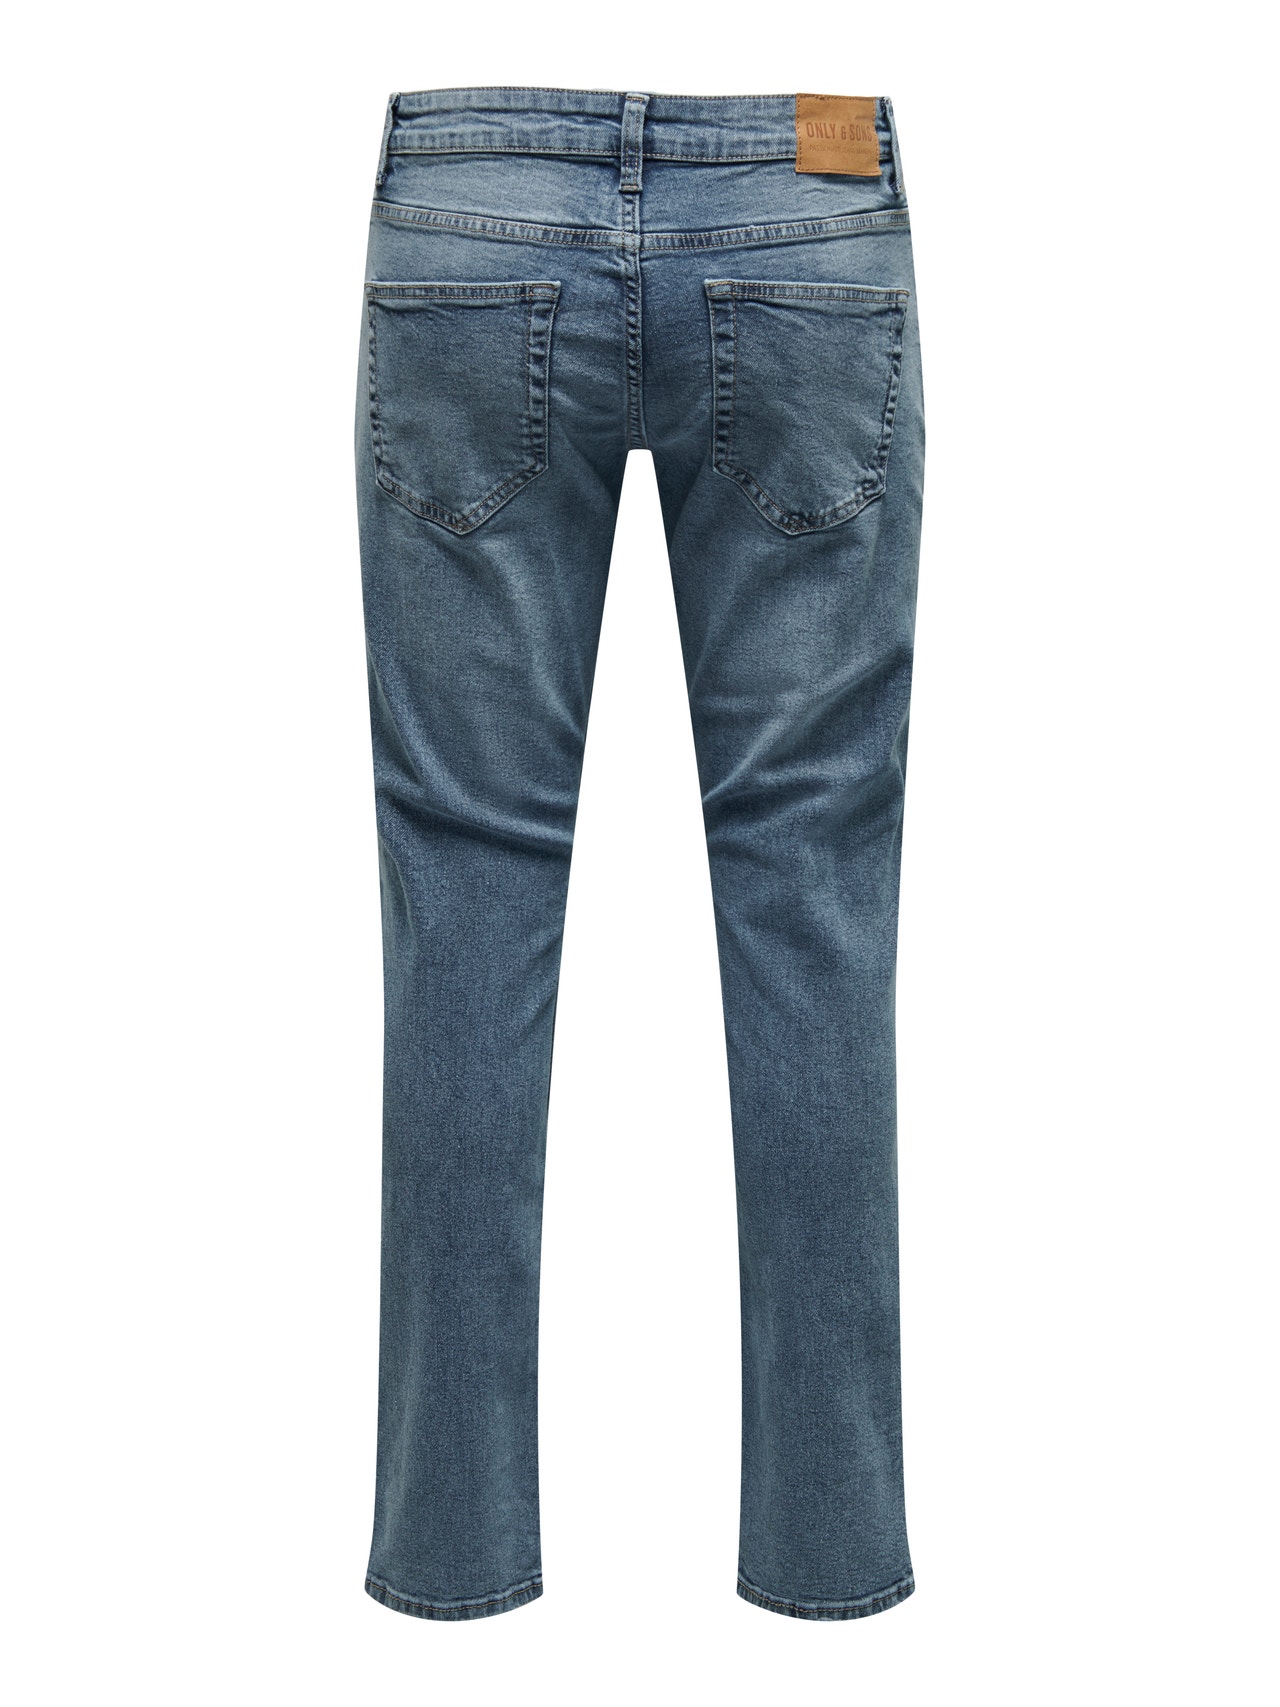 ONLY & SONS Slim Fit Jeans -Light Blue Denim - 22024594